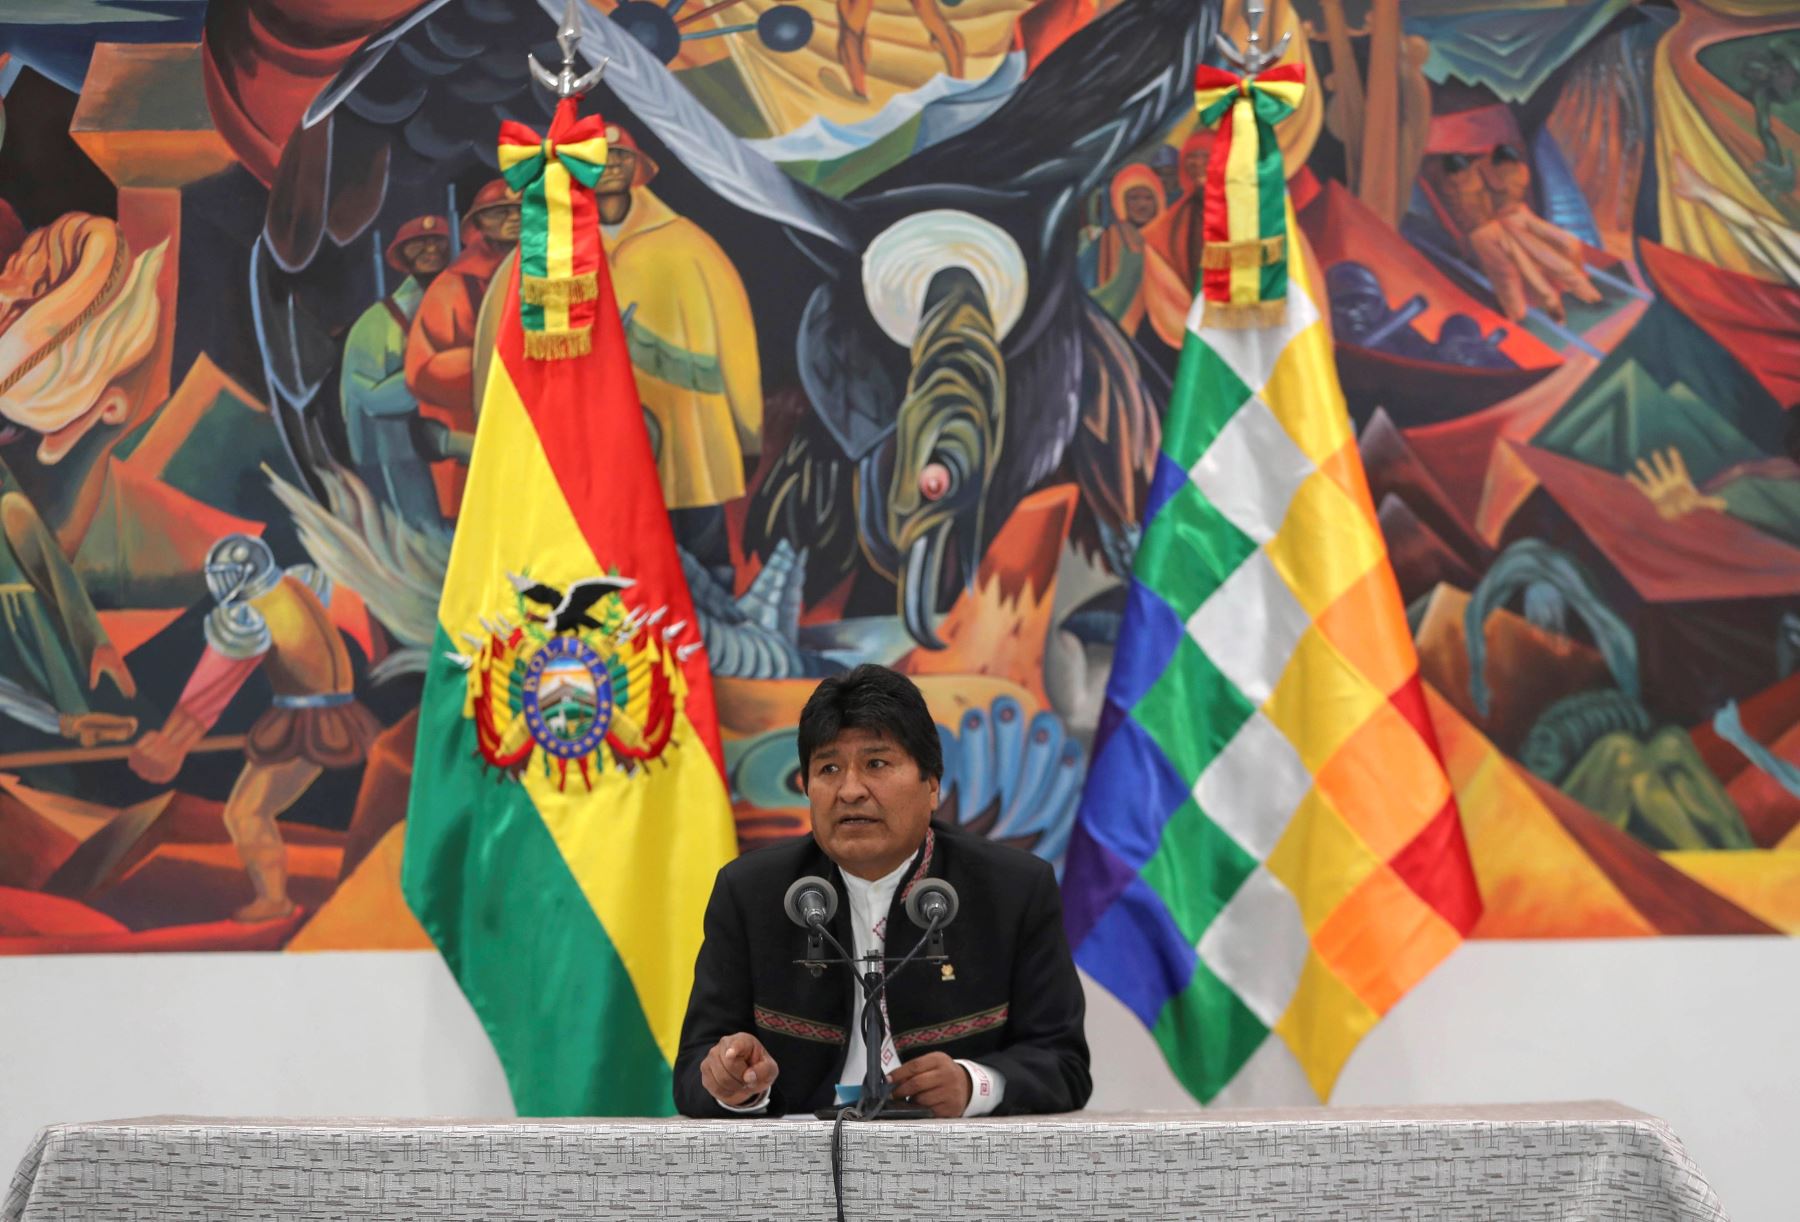 El presidente de Bolivia, Evo Morales, en una comparecencia hoy miércoles ante los medios en La Paz tras dos días de protestas en el país por la sospecha de un fraude electoral a su favor. Foto: EFE